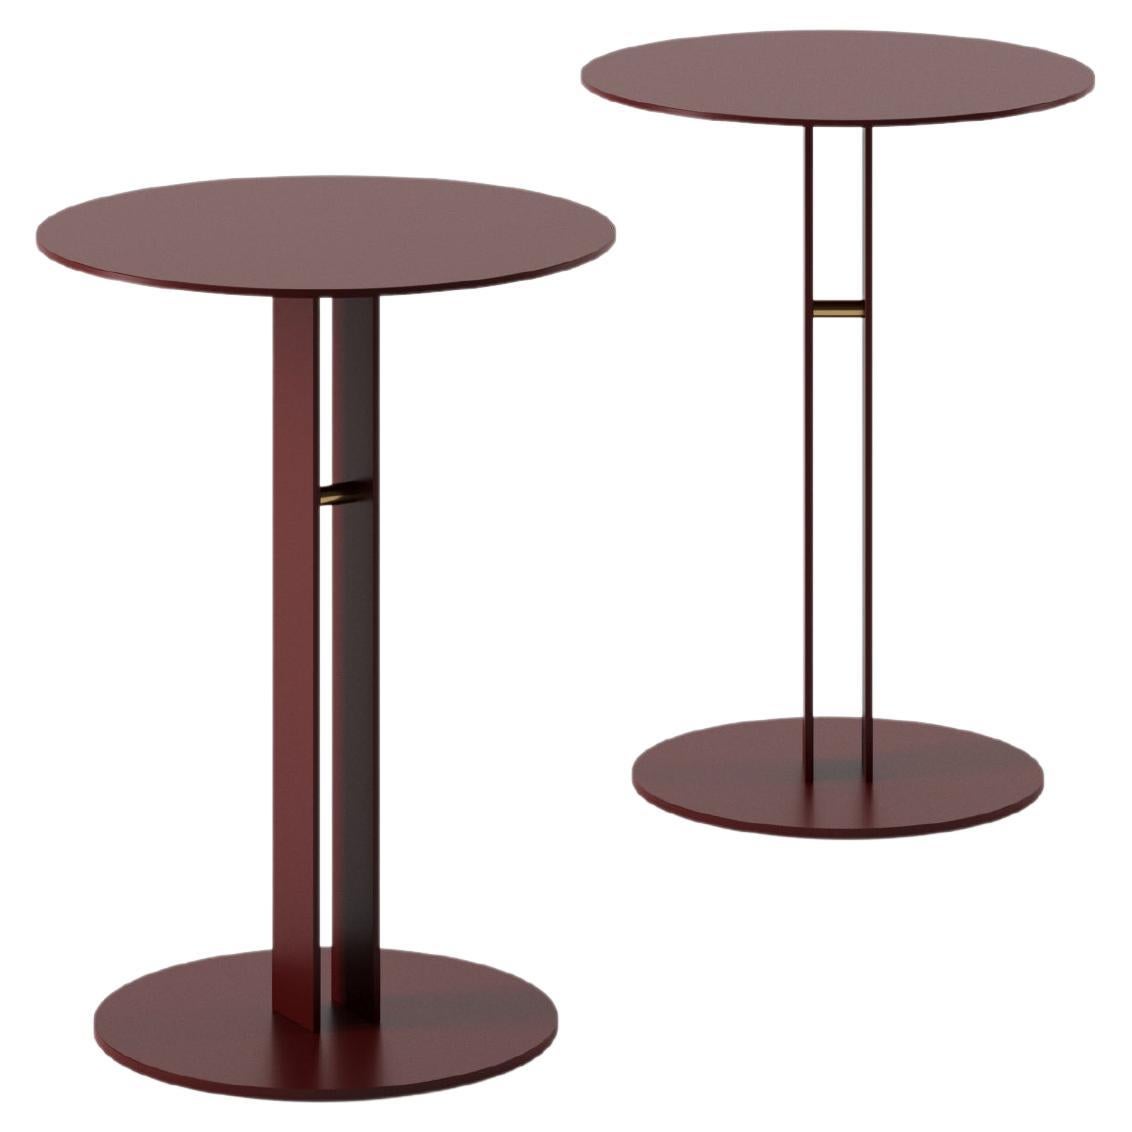 Portman Side Table 40cm/15.7" in Oxblood